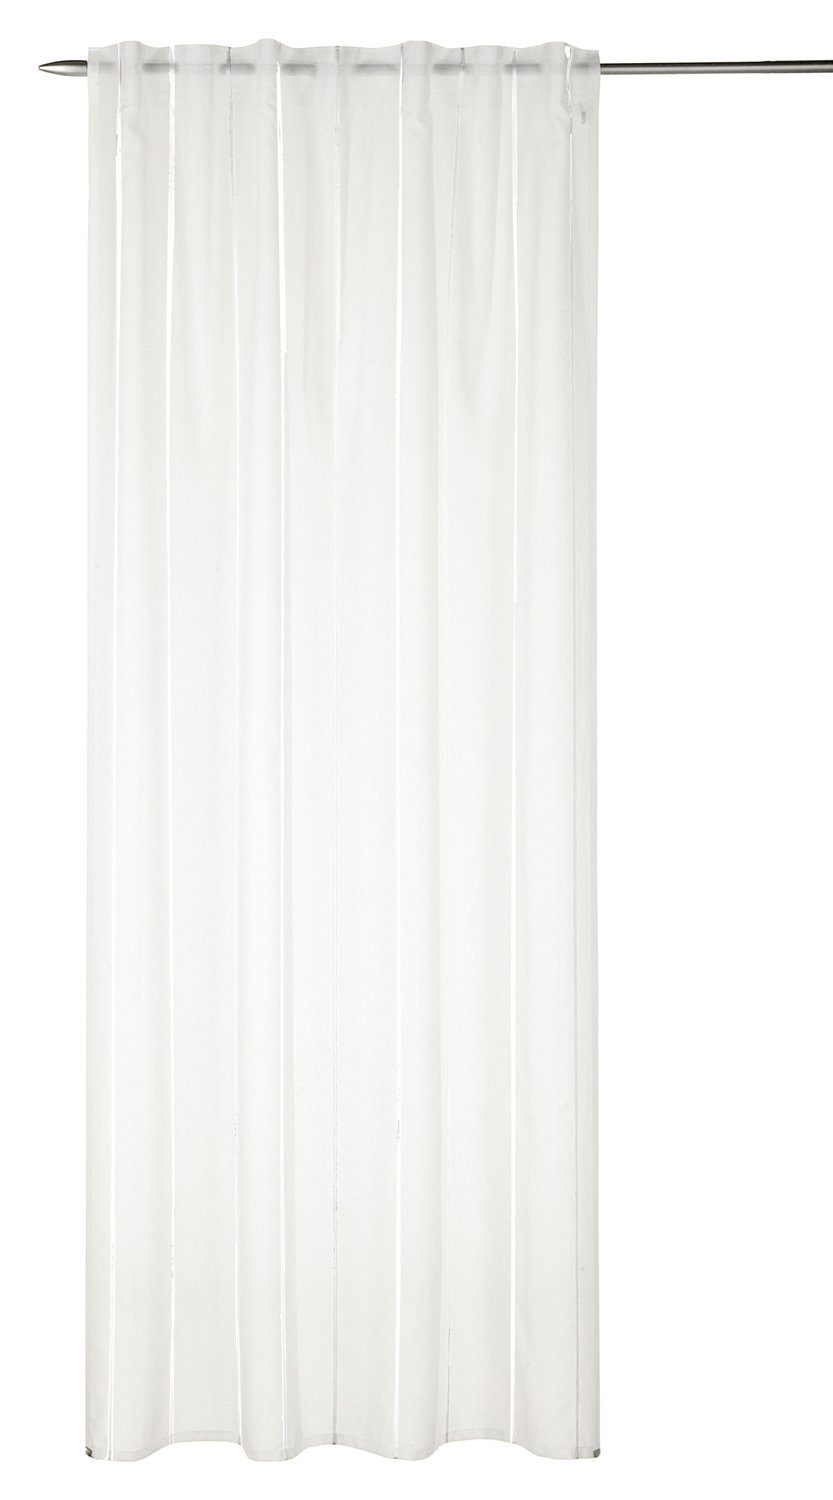 Vorhang Schlaufenvorhang, Weiß, B 135 cm, L 245 cm, Albani, verdeckte Schlaufen, halbtransparent